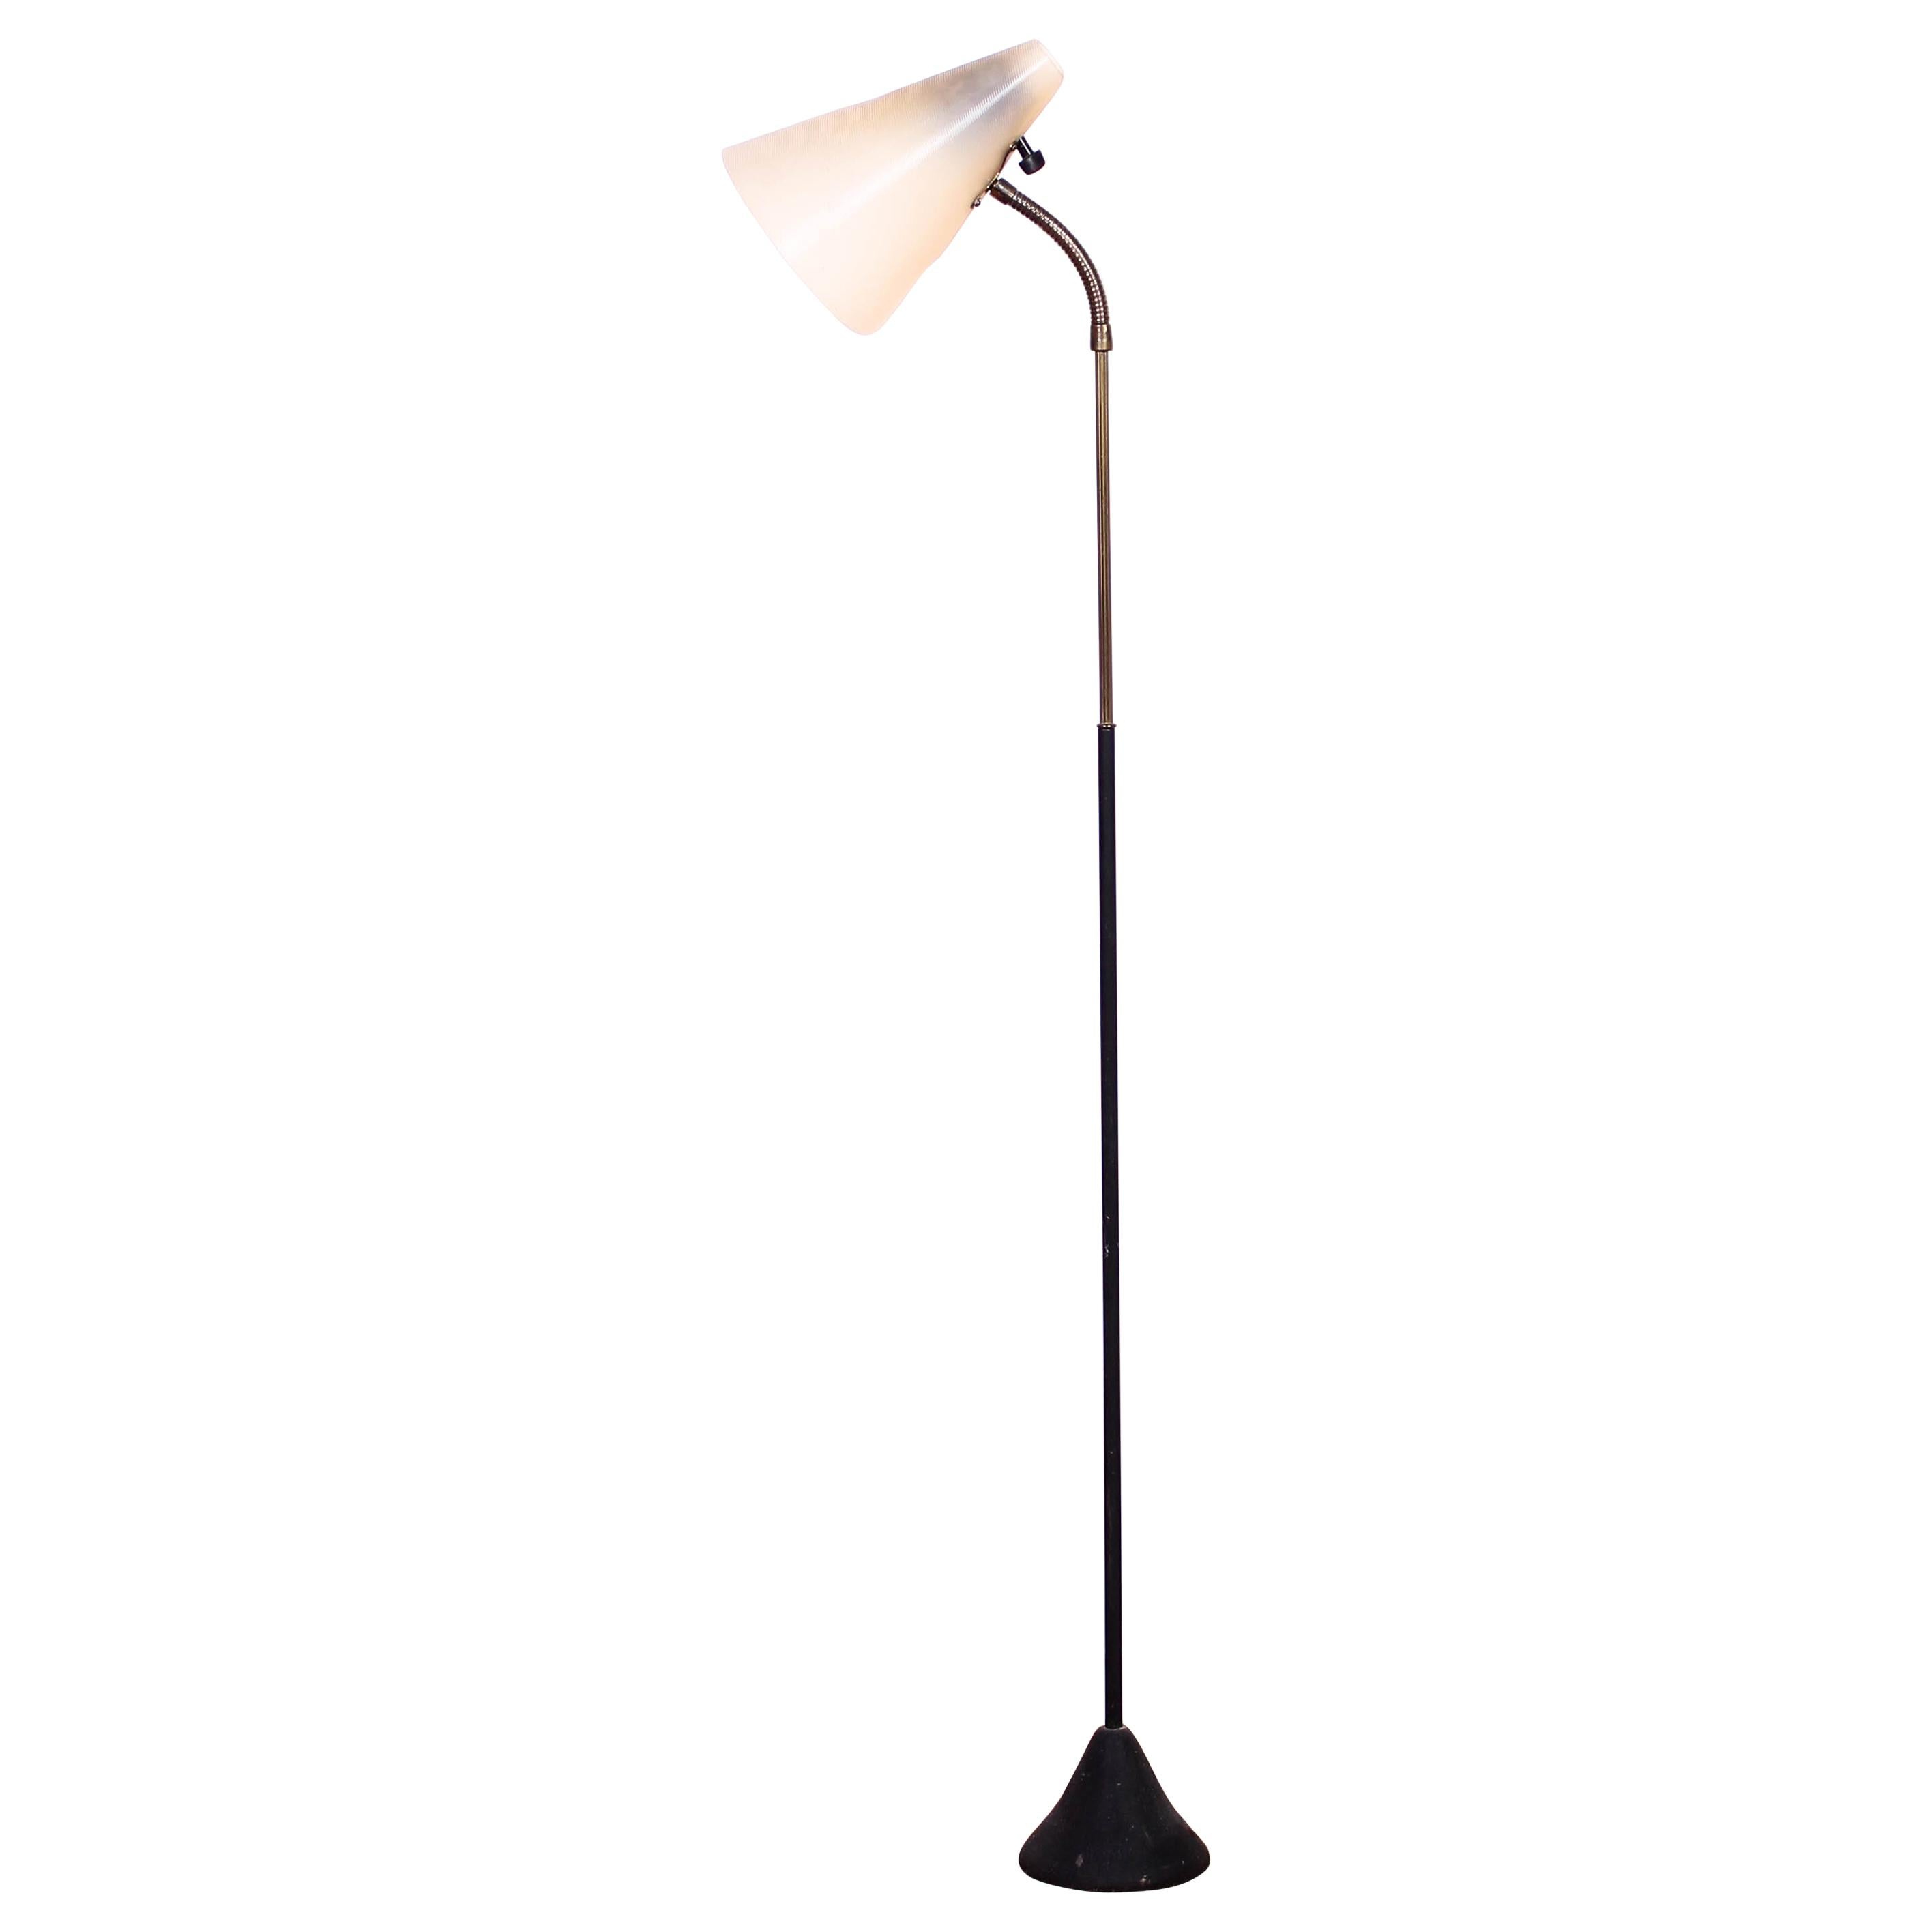 Midcentury Floor Lamp by ASEA